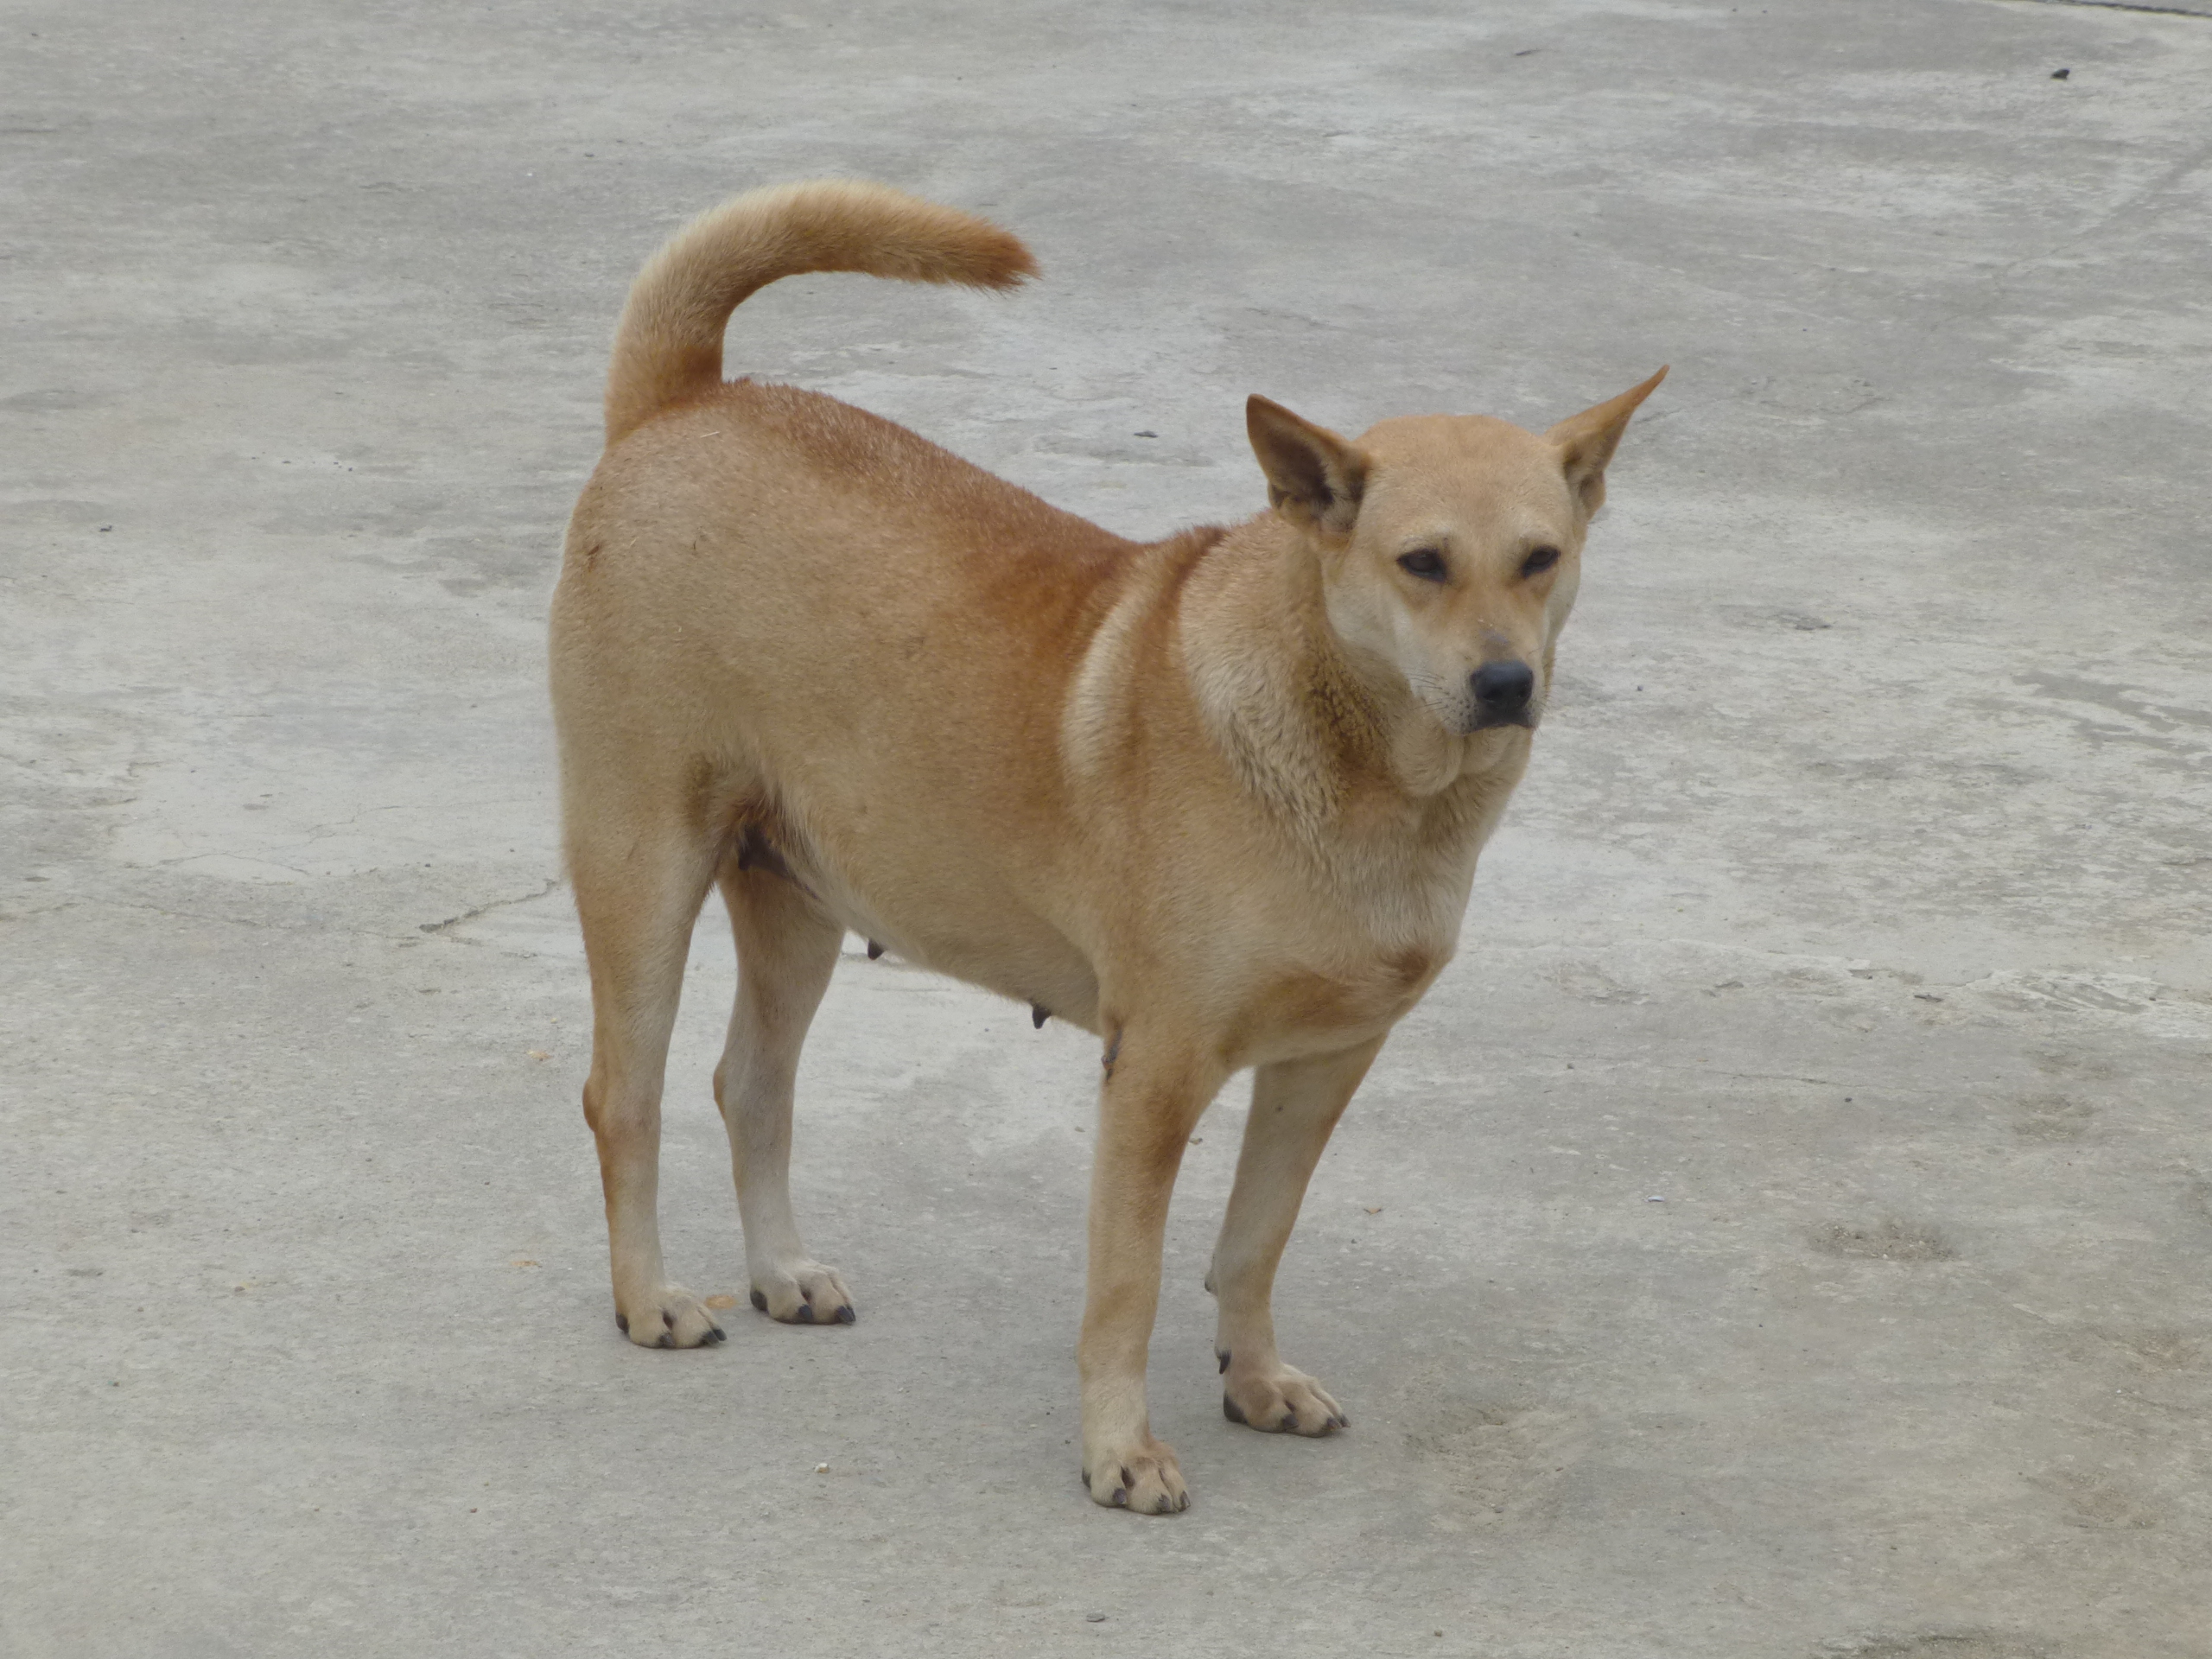 Hãy khám phá hình ảnh về các loài chó cỏ trên trang Wikipedia để tìm hiểu thêm về những giống chó đặc biệt ngoài những loài thường thấy. Tìm hiểu sẽ giúp bạn hiểu rõ hơn về đặc điểm và thói quen sinh sống của chúng.